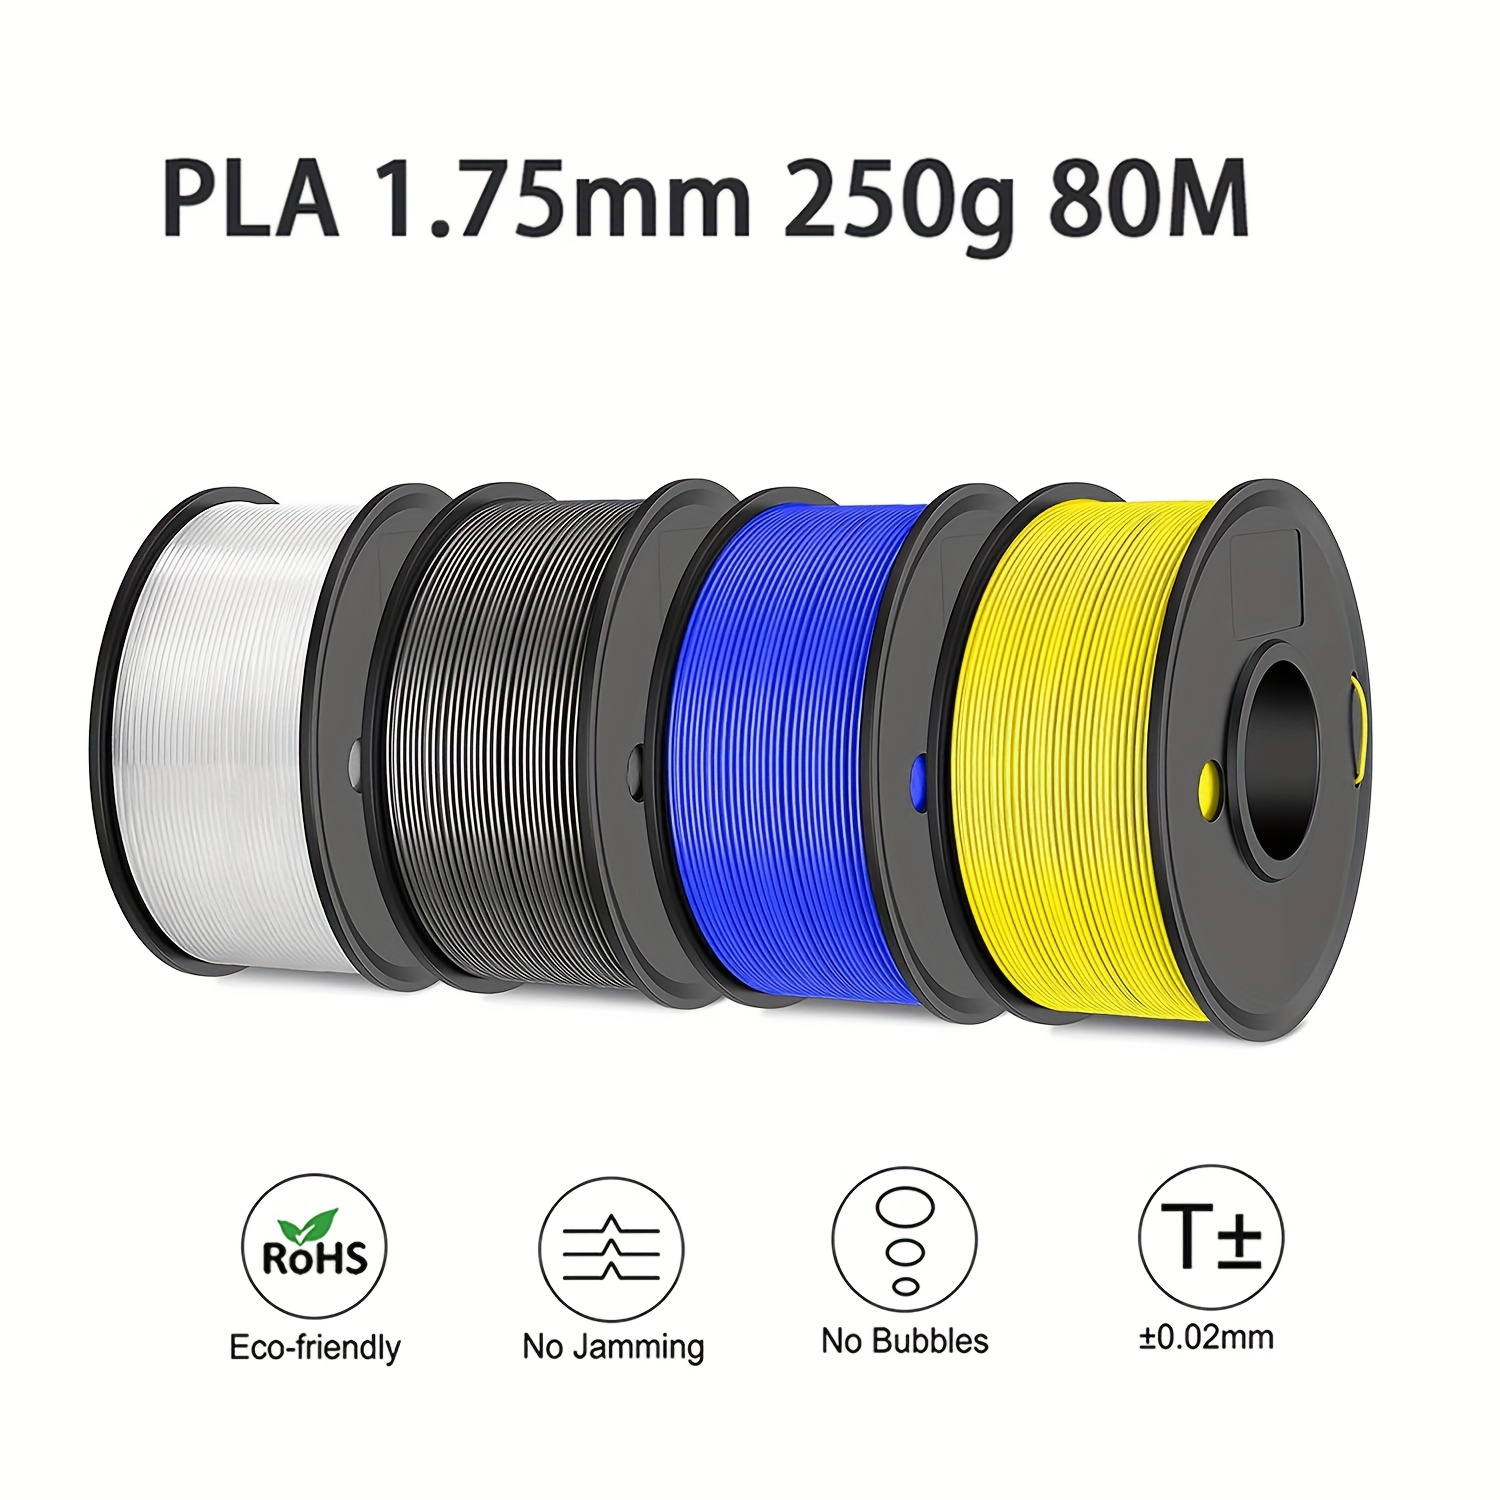 Filament 3D PLA Translucide 500g Vert 1.75mm